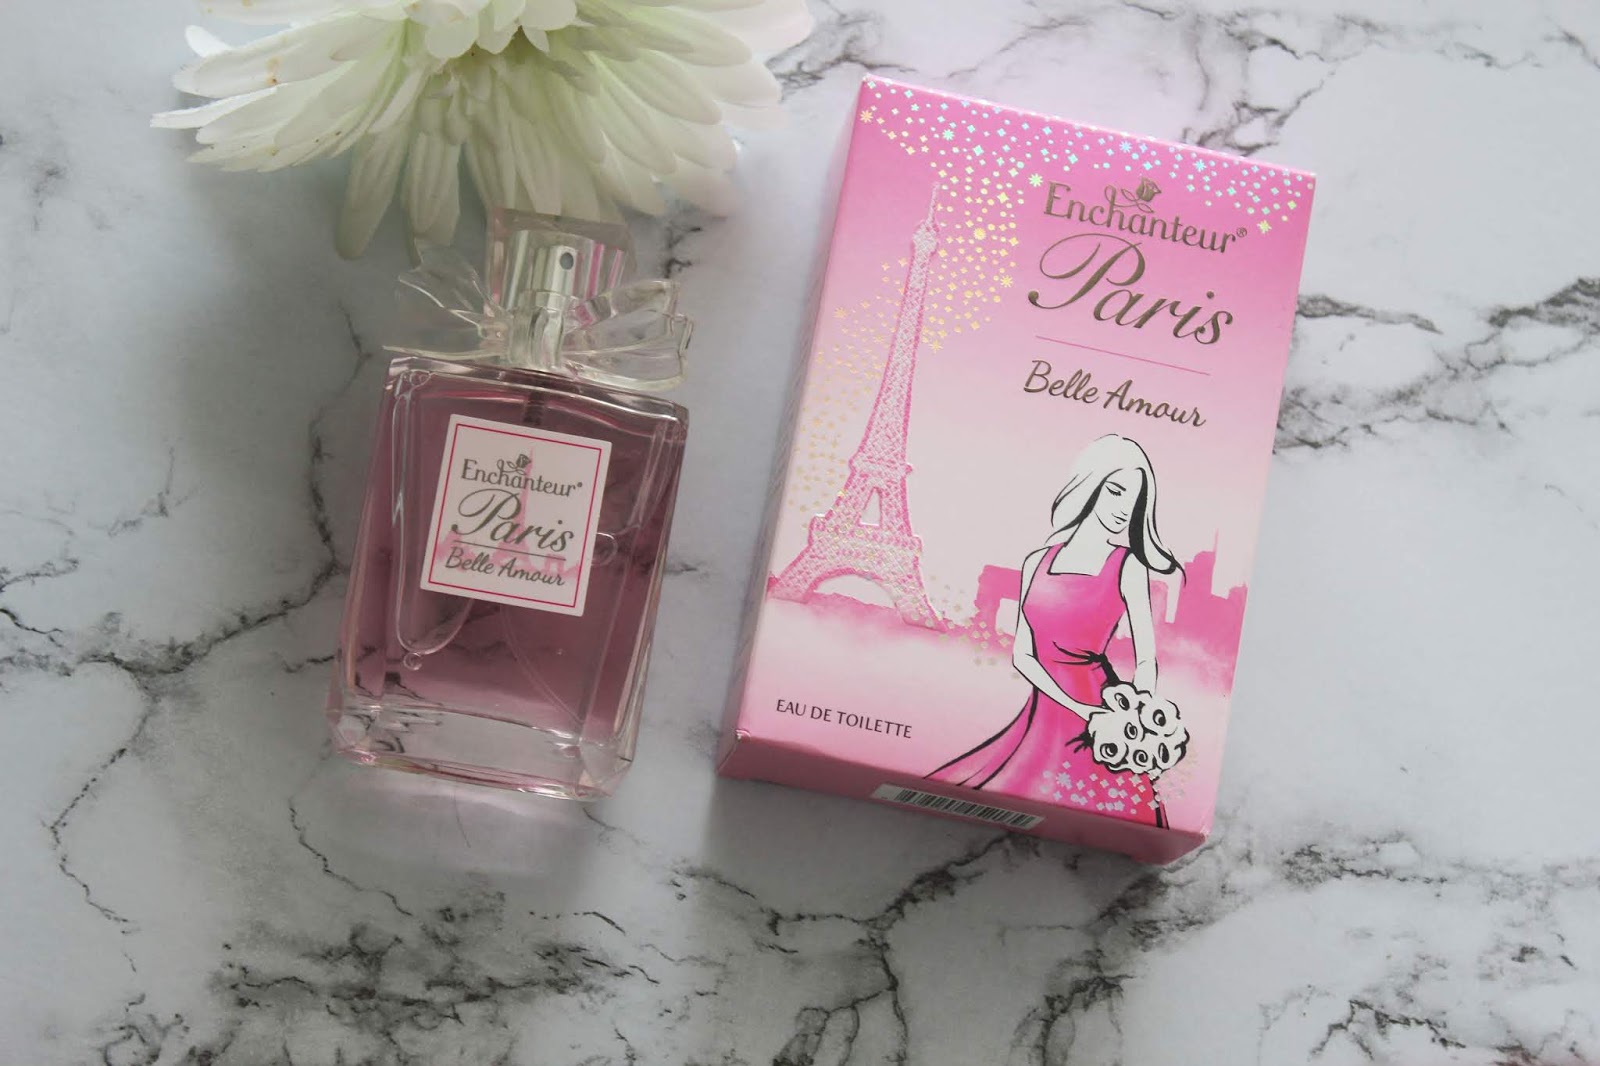 Enchanteur Paris Belle Amour EDT Perfume